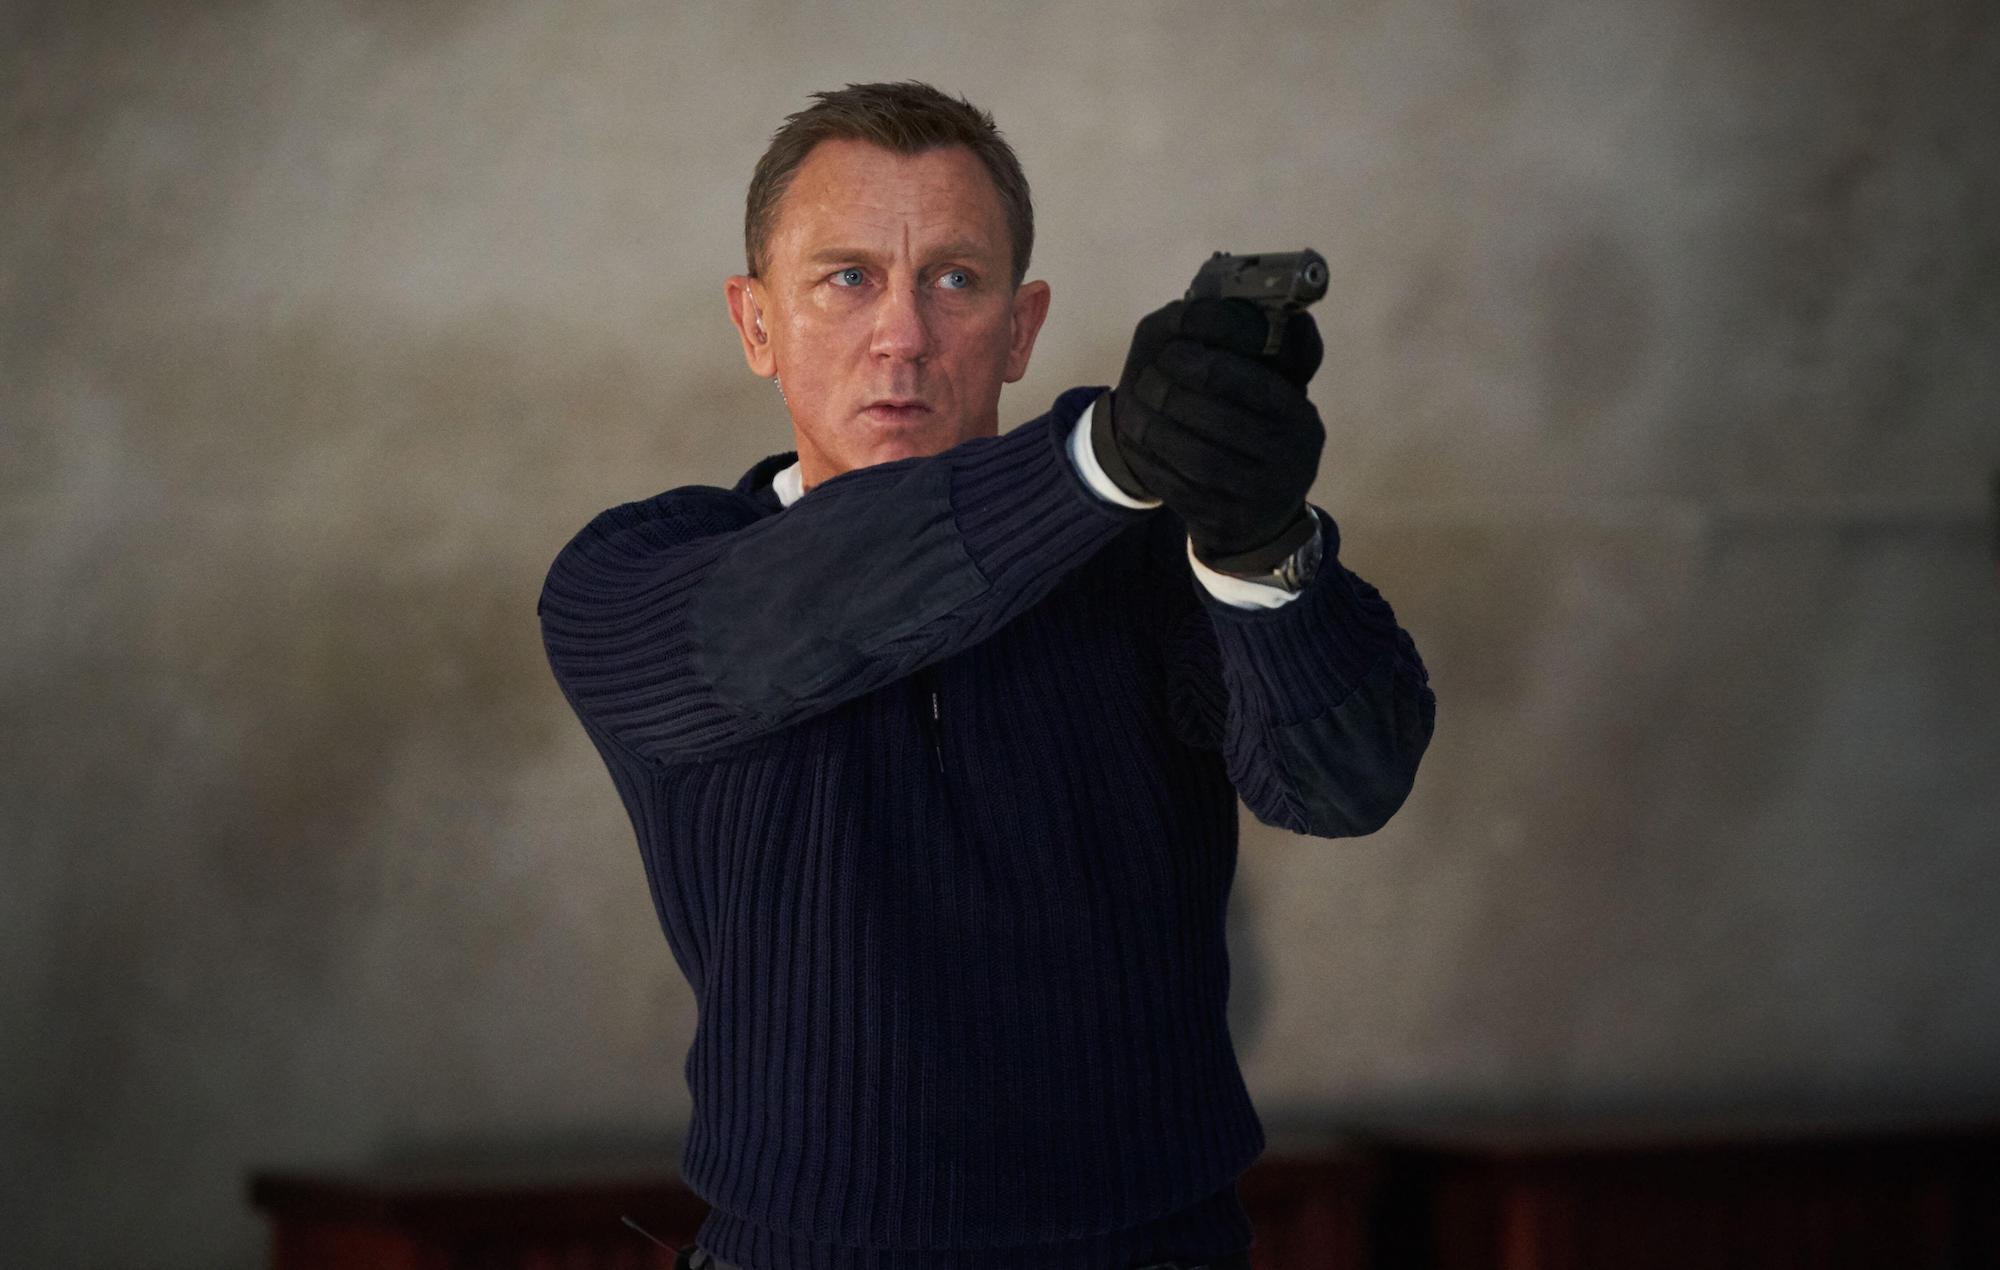 El director de casting de James Bond dice que los actores jóvenes no pueden interpretar a 007